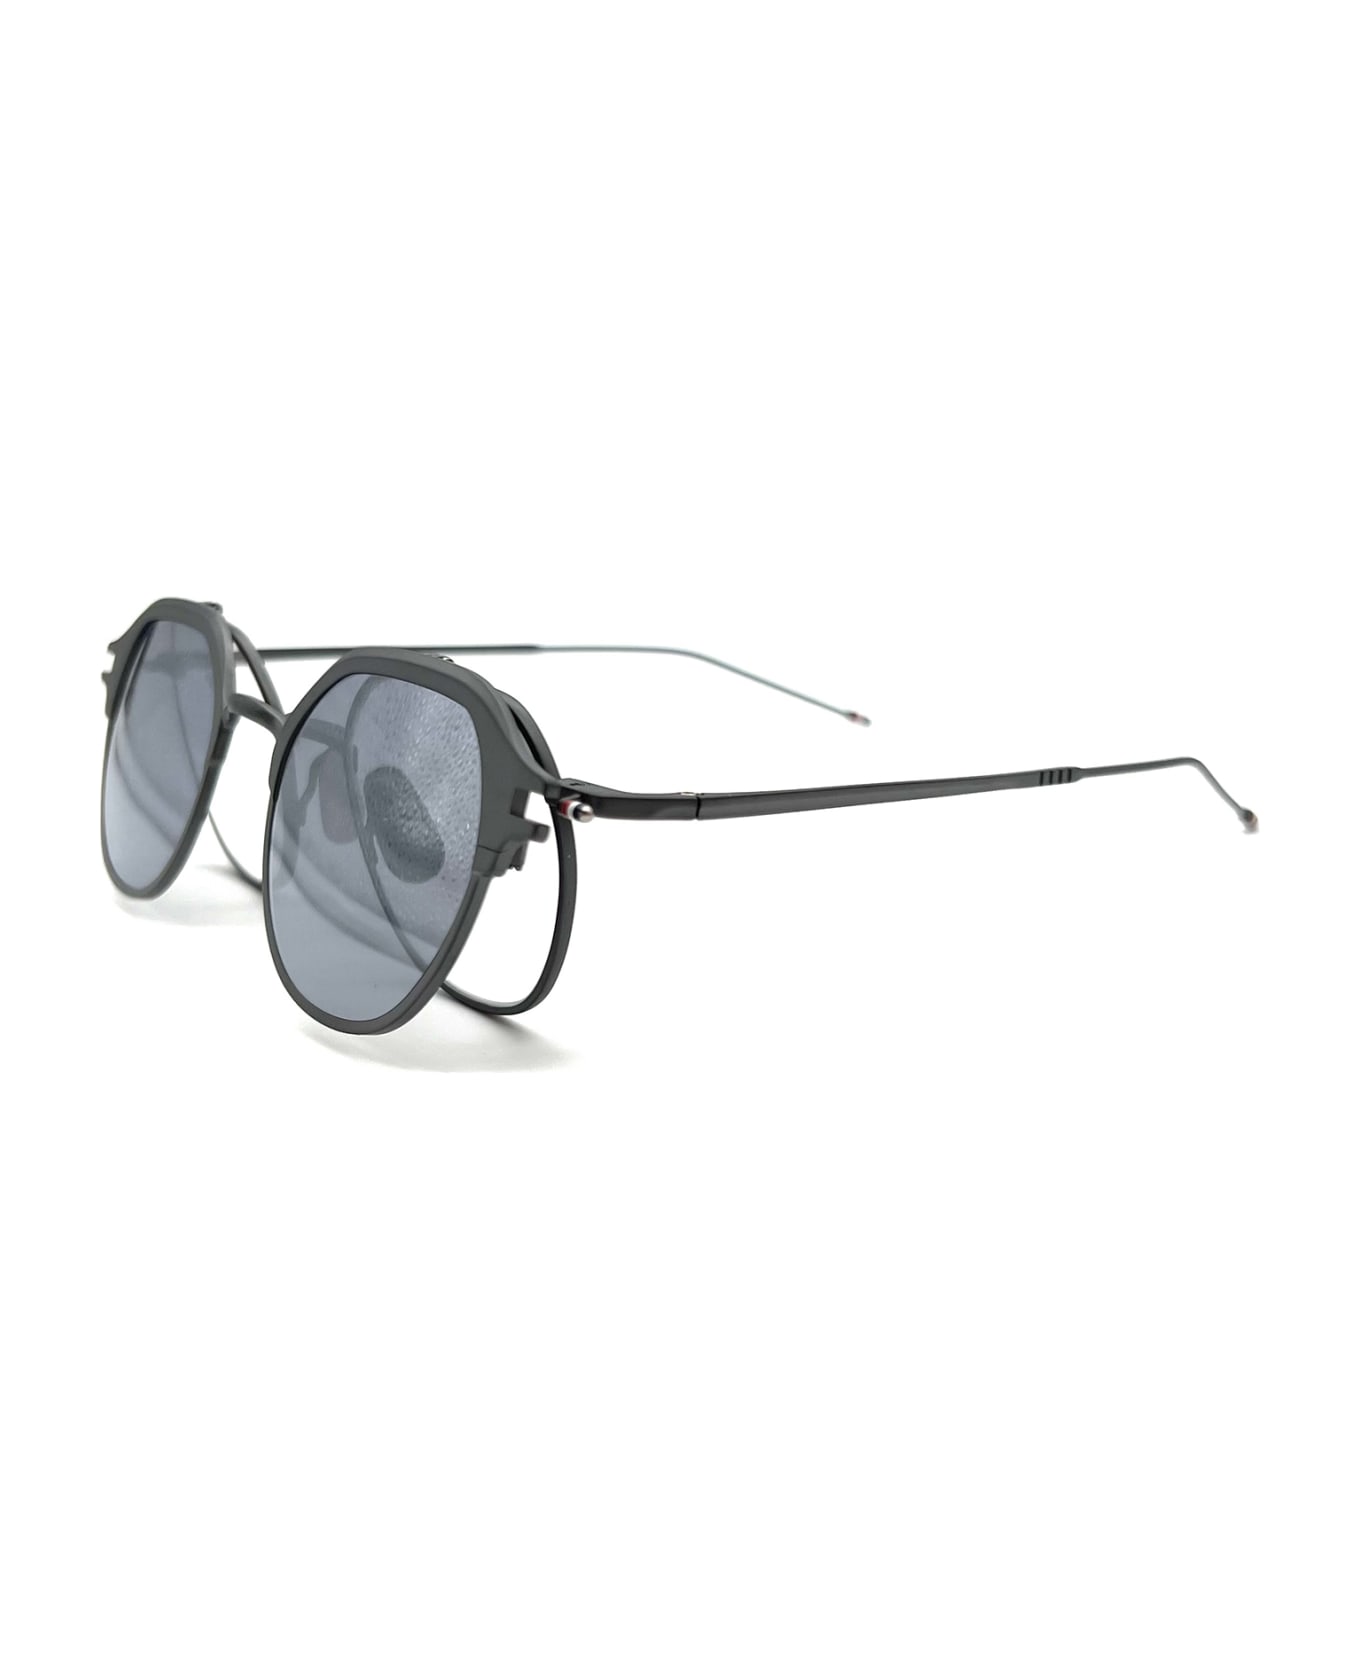 Thom Browne UES812A/G0001 Sunglasses - Black/charcoal サングラス